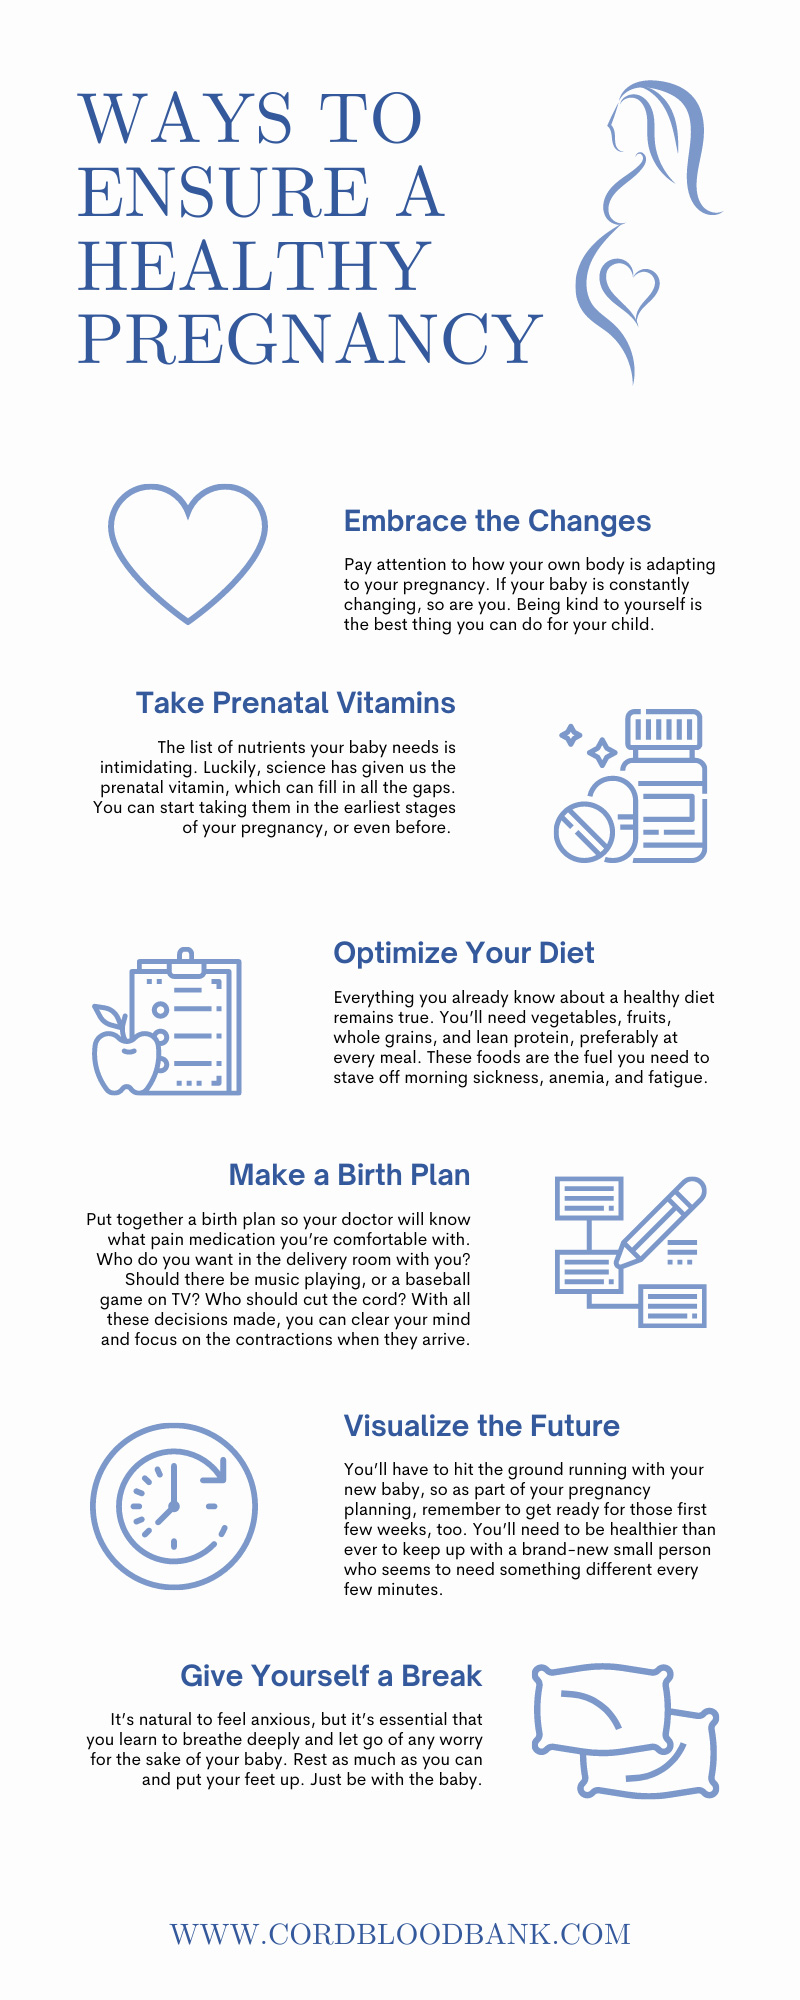 Ways To Ensure a Healthy Pregnancy